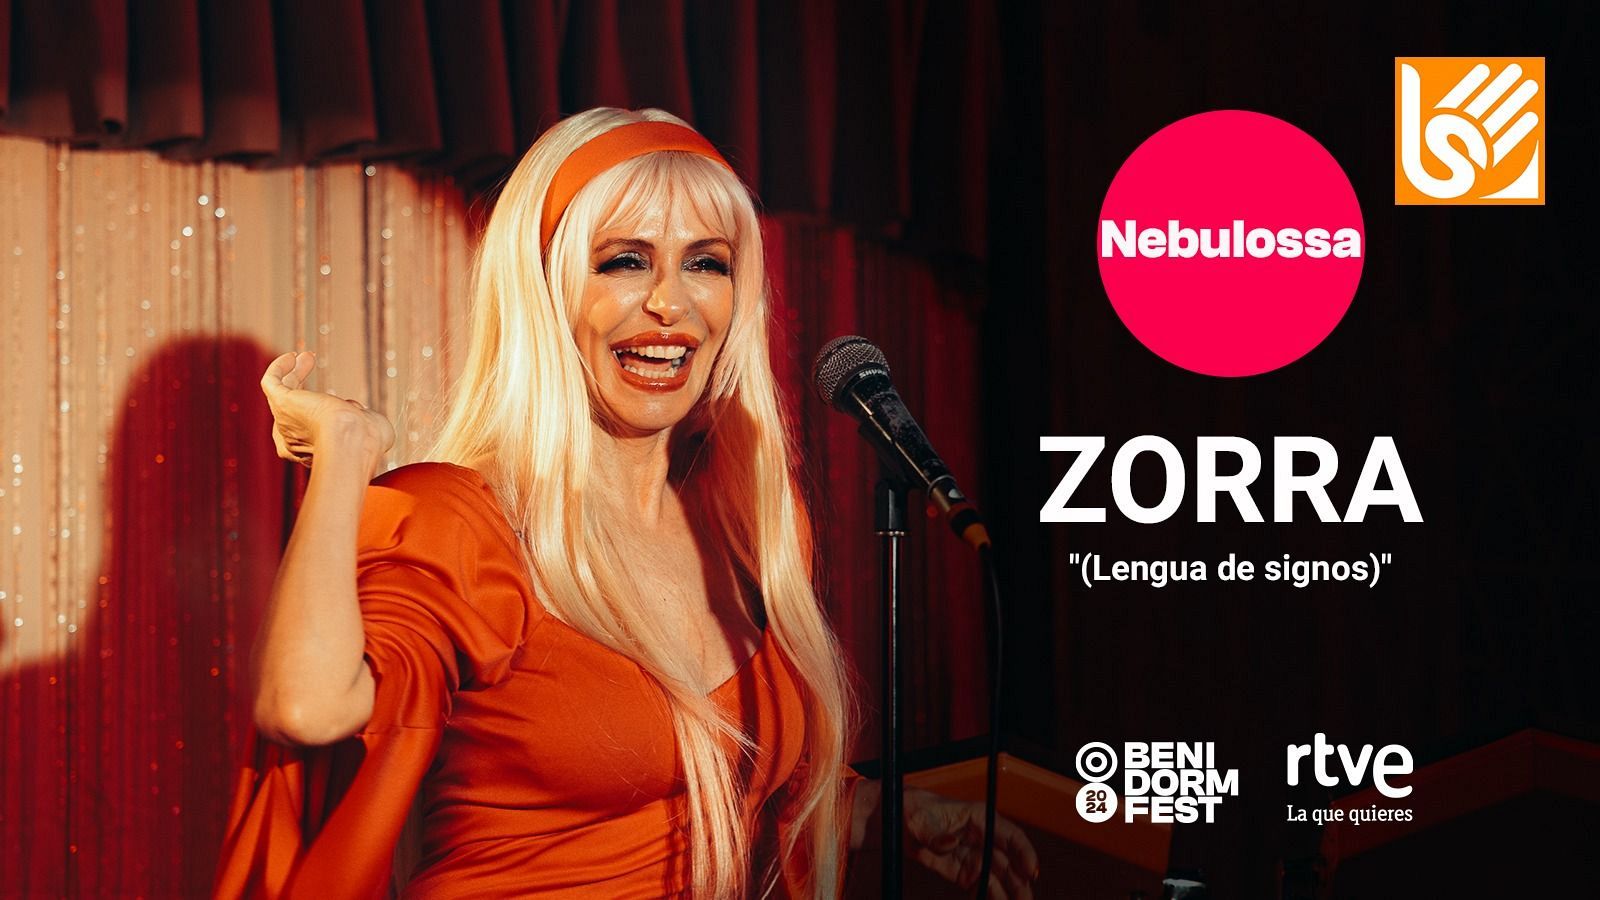 Eurovisión 2024 | "Zorra" de Nebulossa, videoclip oficial (Traducción al lenguaje de signos)